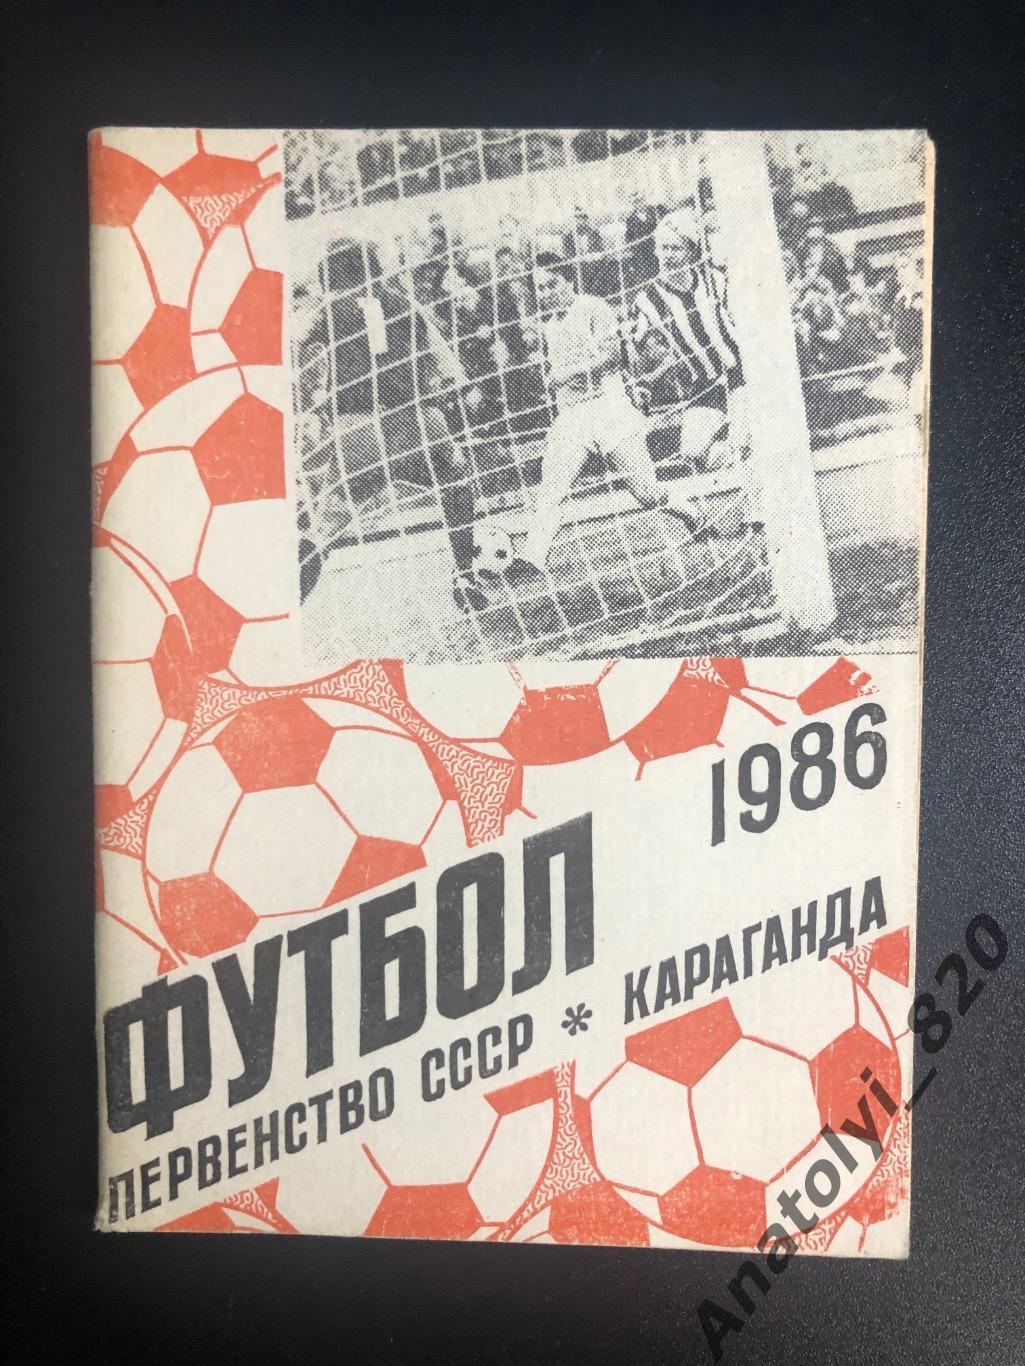 Караганда 1986 год календарь - справочник